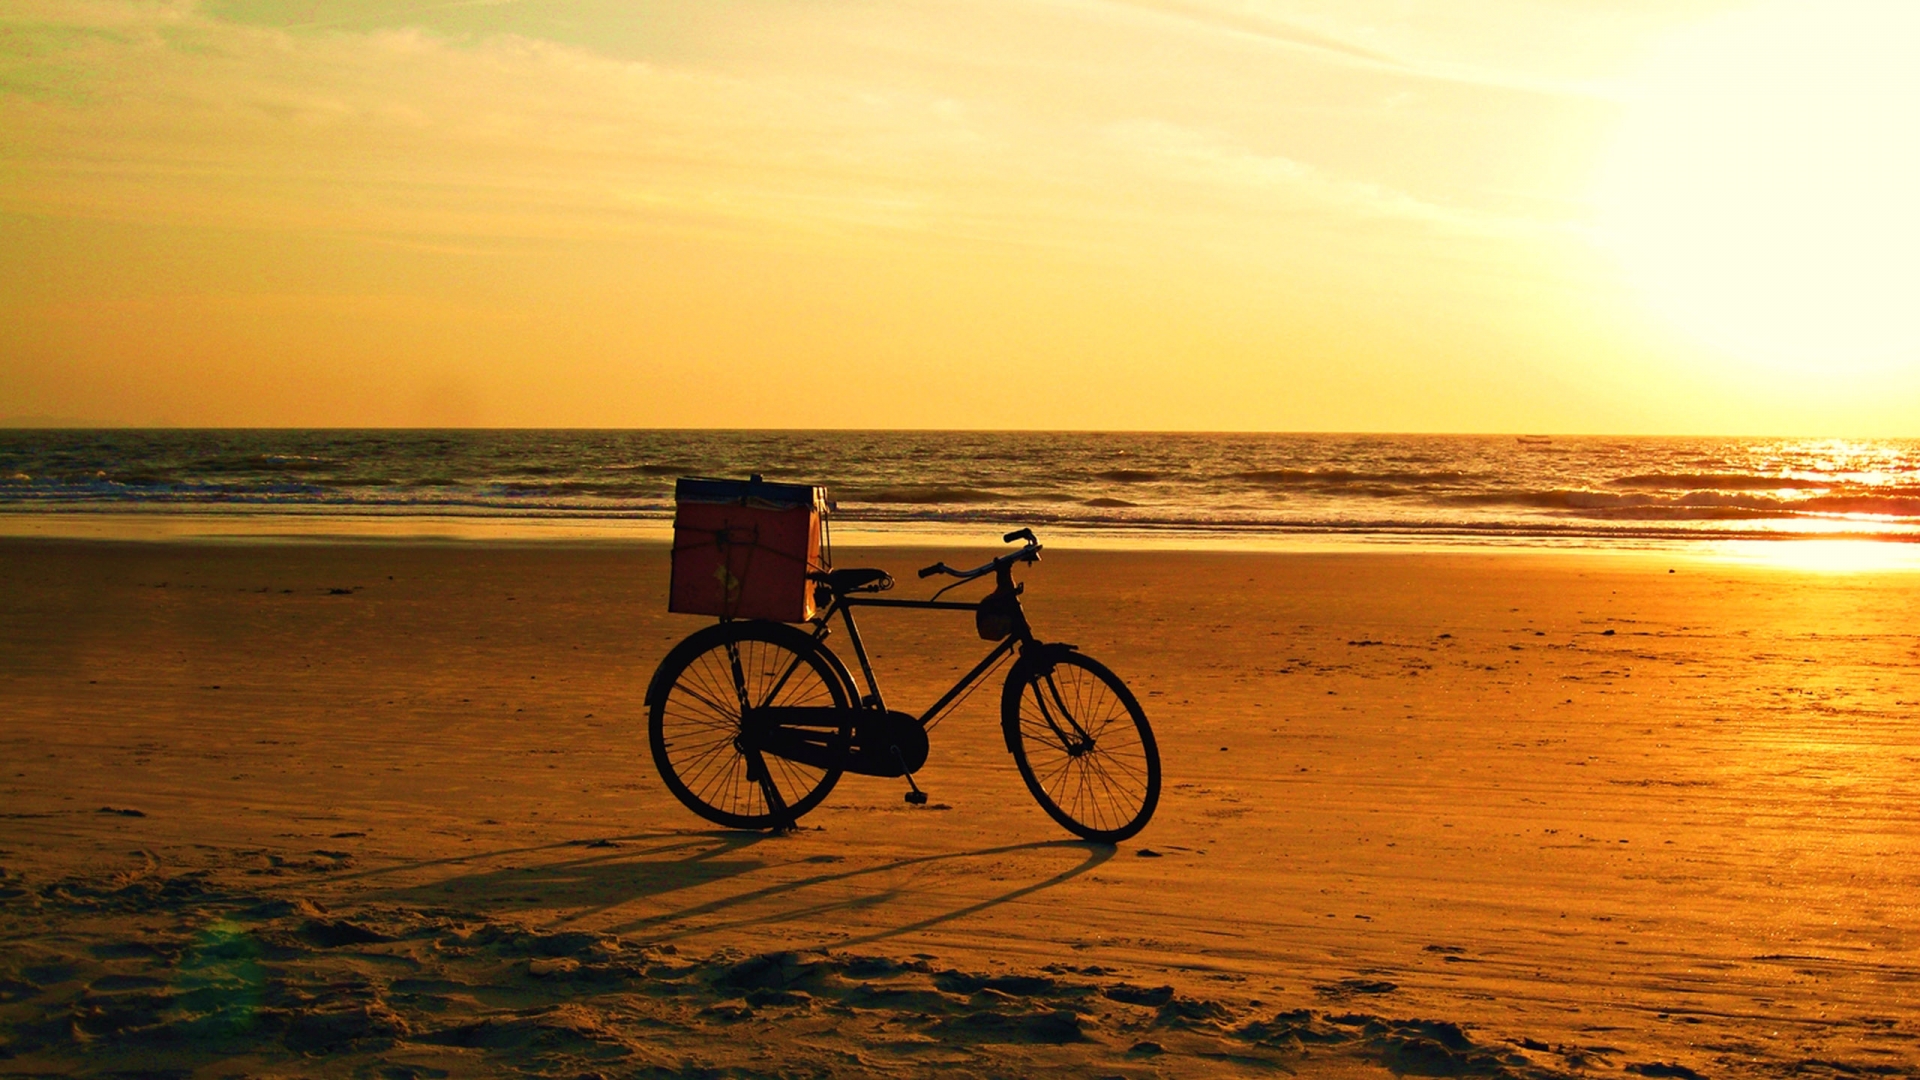 fondos de pantalla retro vintage,playa,cielo,mar,bicicleta,puesta de sol